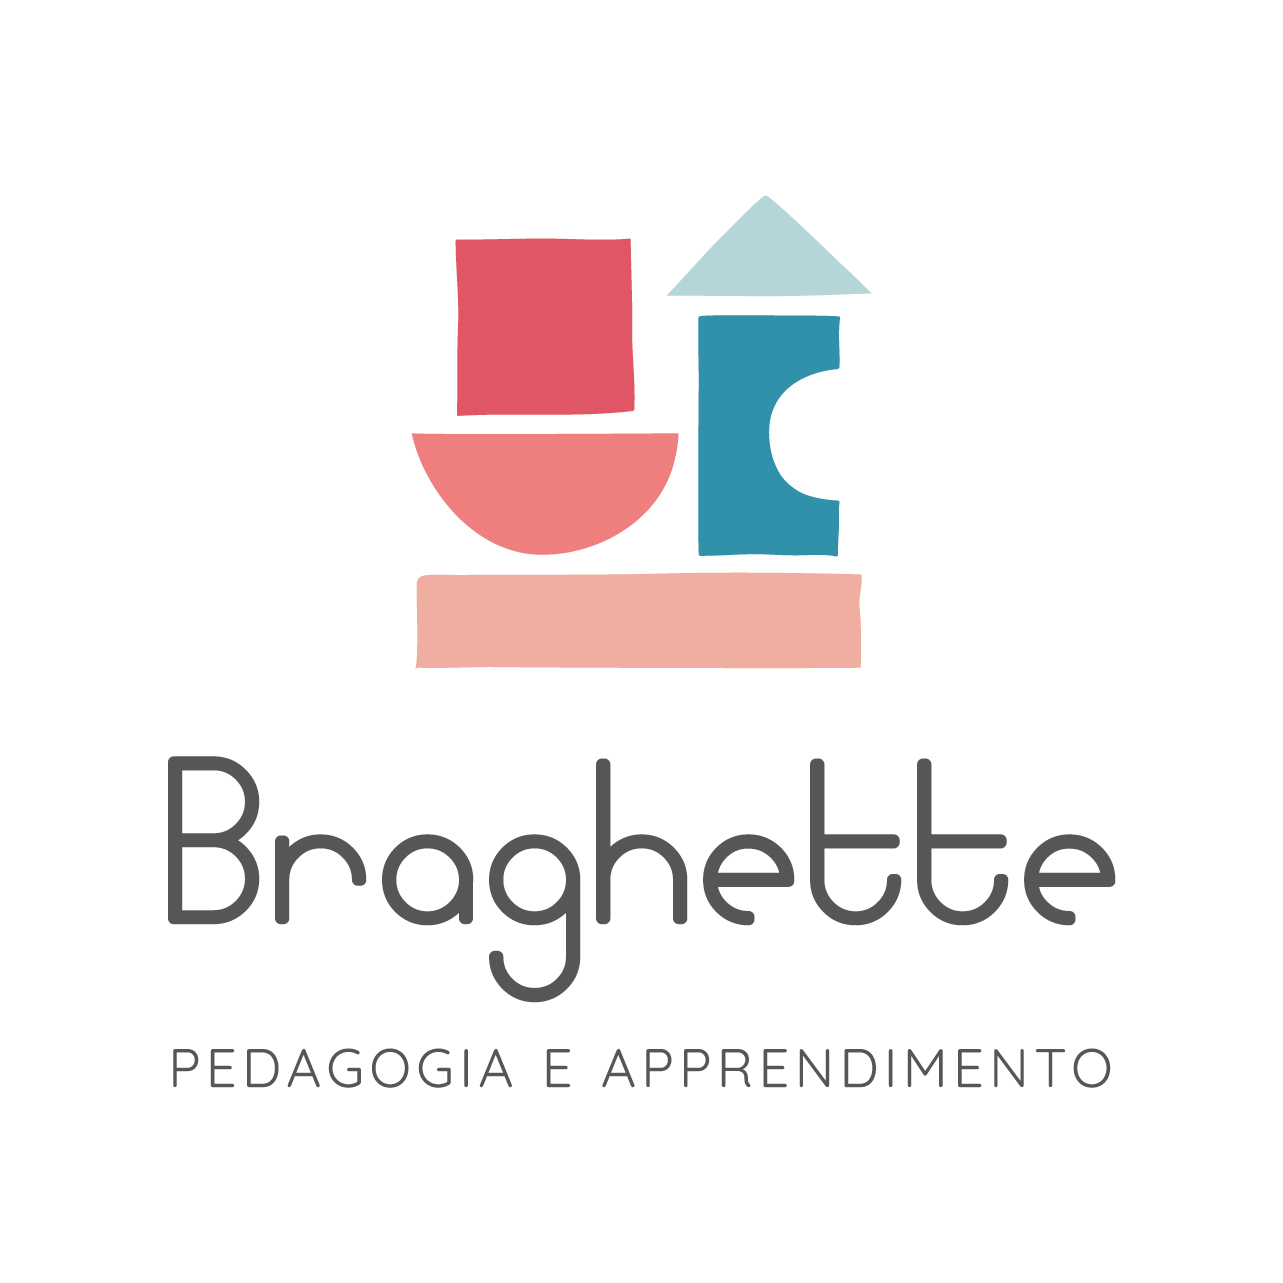 Braghette – Pedagogia e Apprendimento a Piacenza